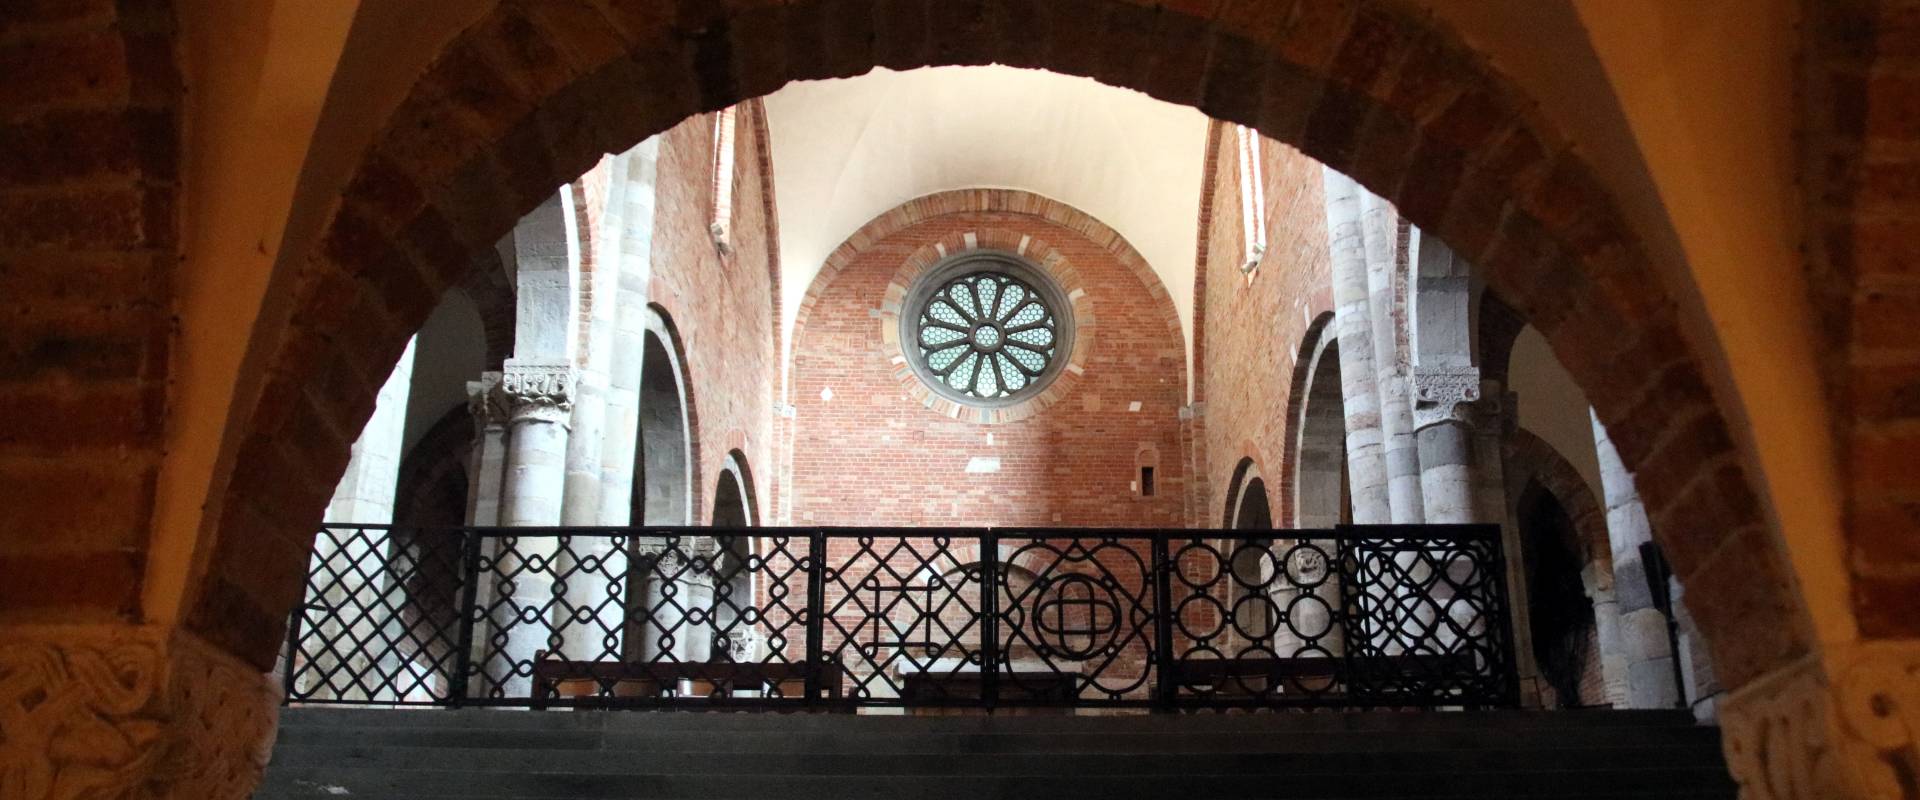 Basilica di San Savino (Piacenza), scalinata della cripta 01 photo by Mongolo1984